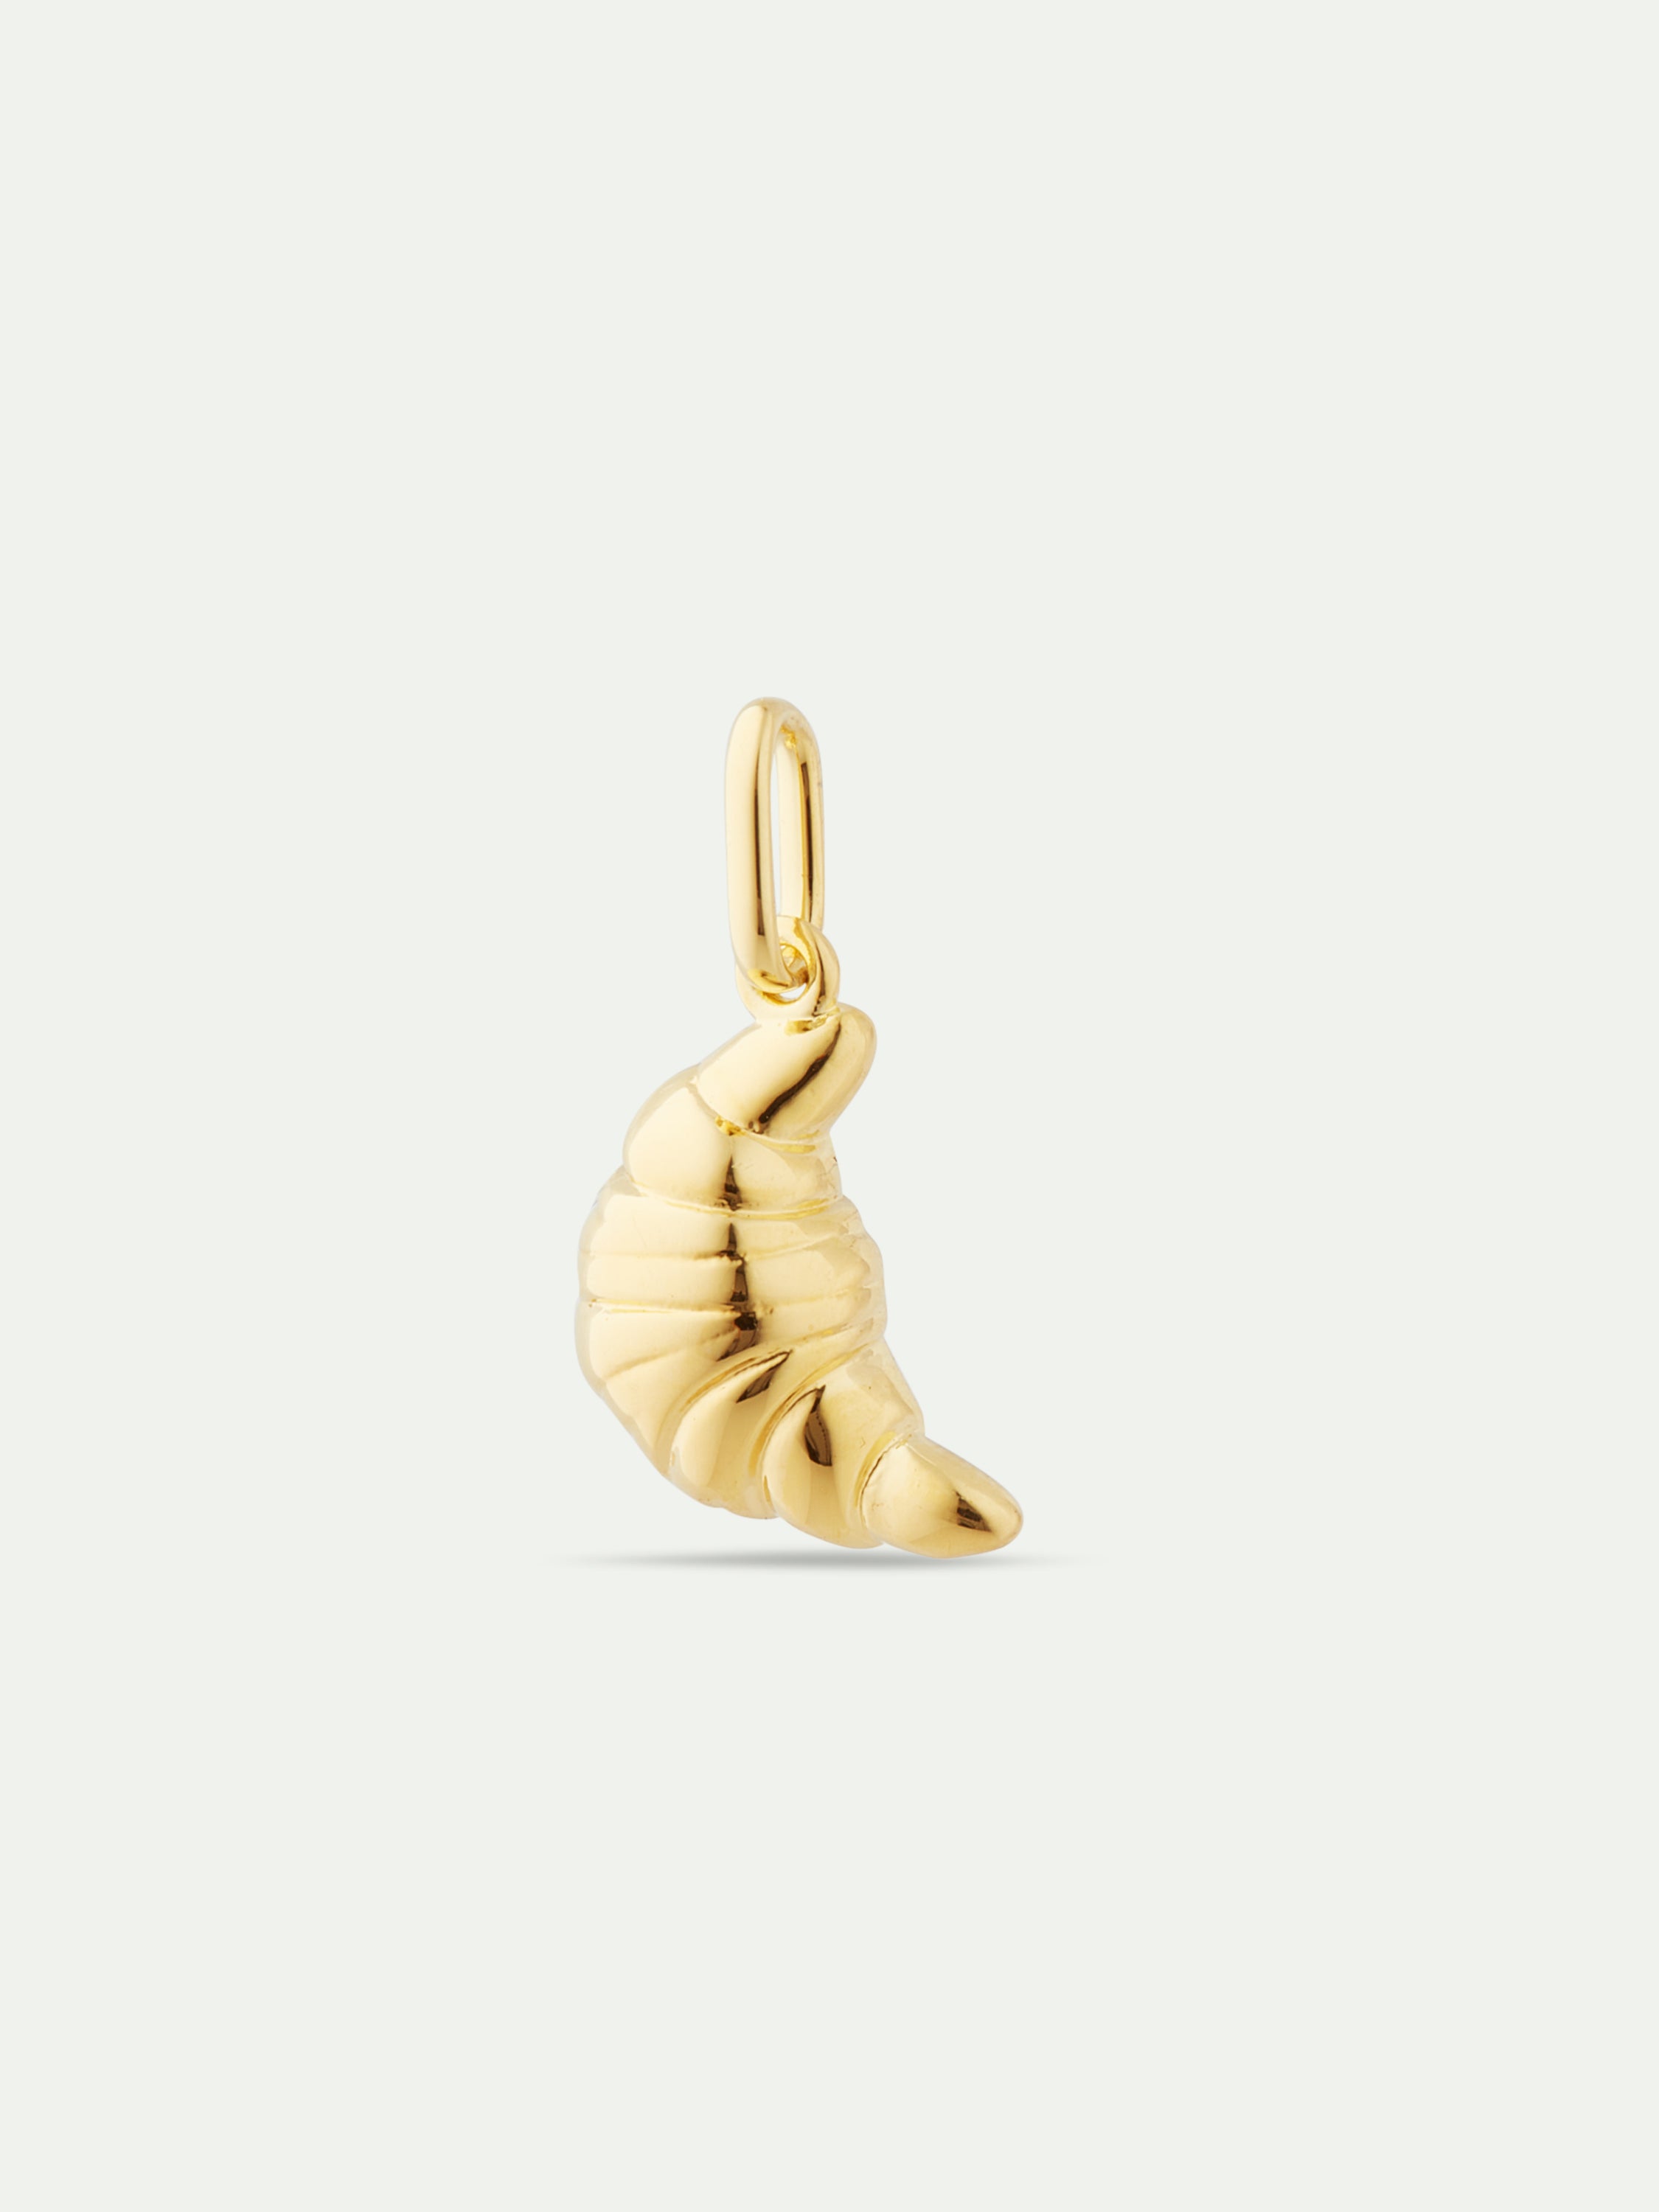 Golden croissant pendant: Pleasure and Refinement